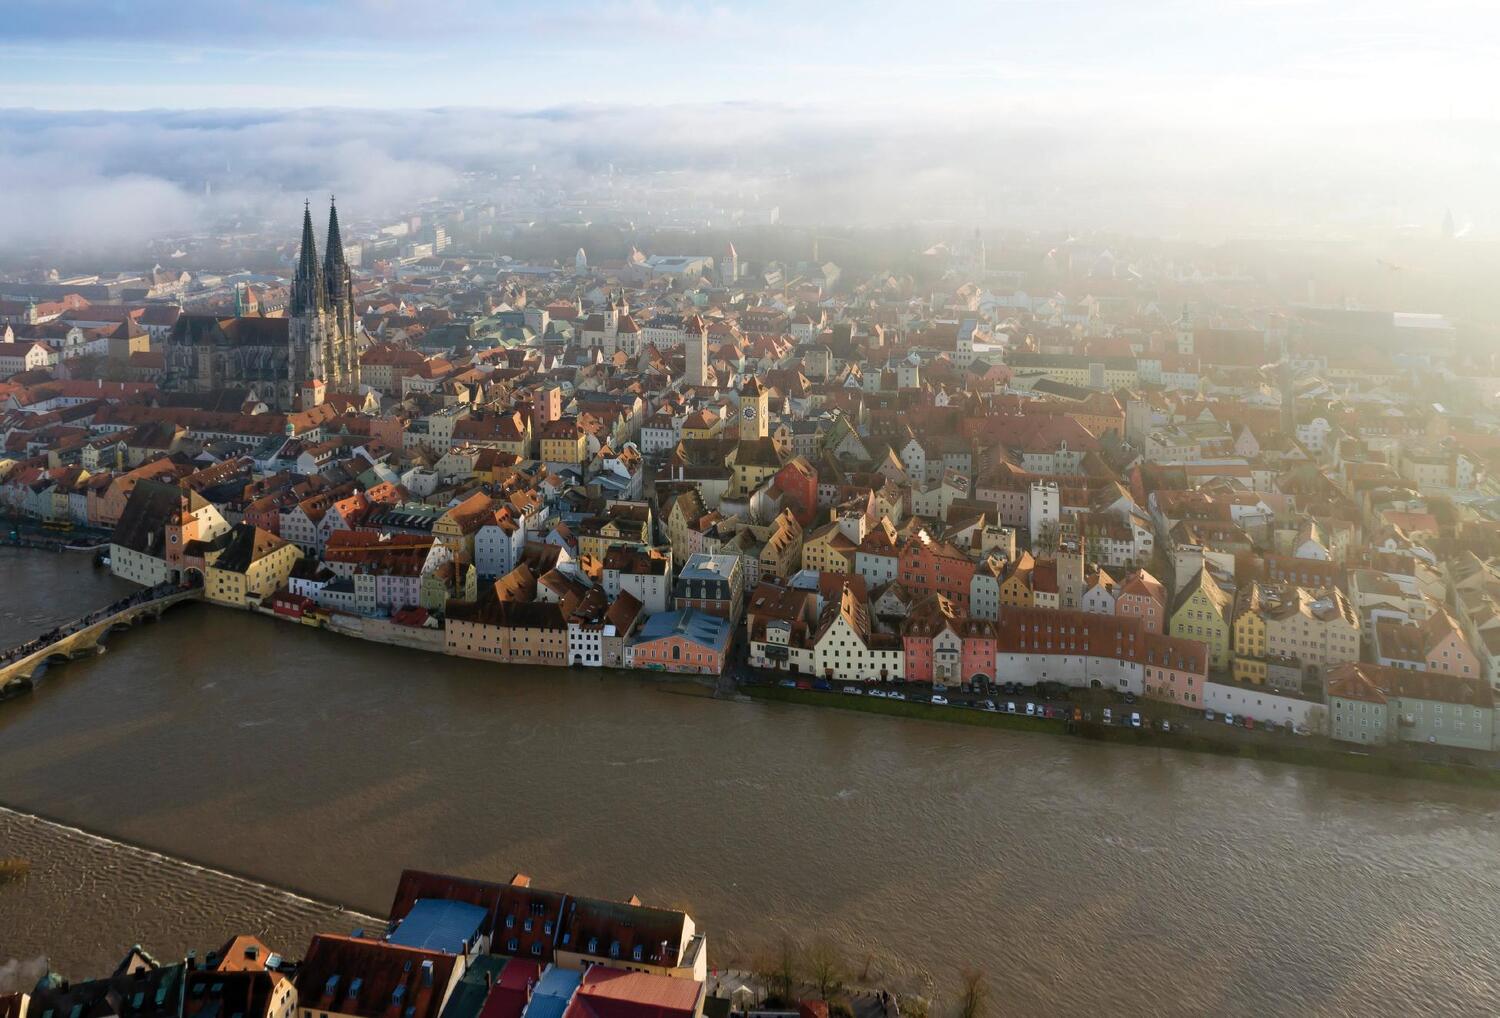 Bild: 9783869139166 | Regensburg | Streifzüge durch 2.000 Jahre europäischer Geschichte